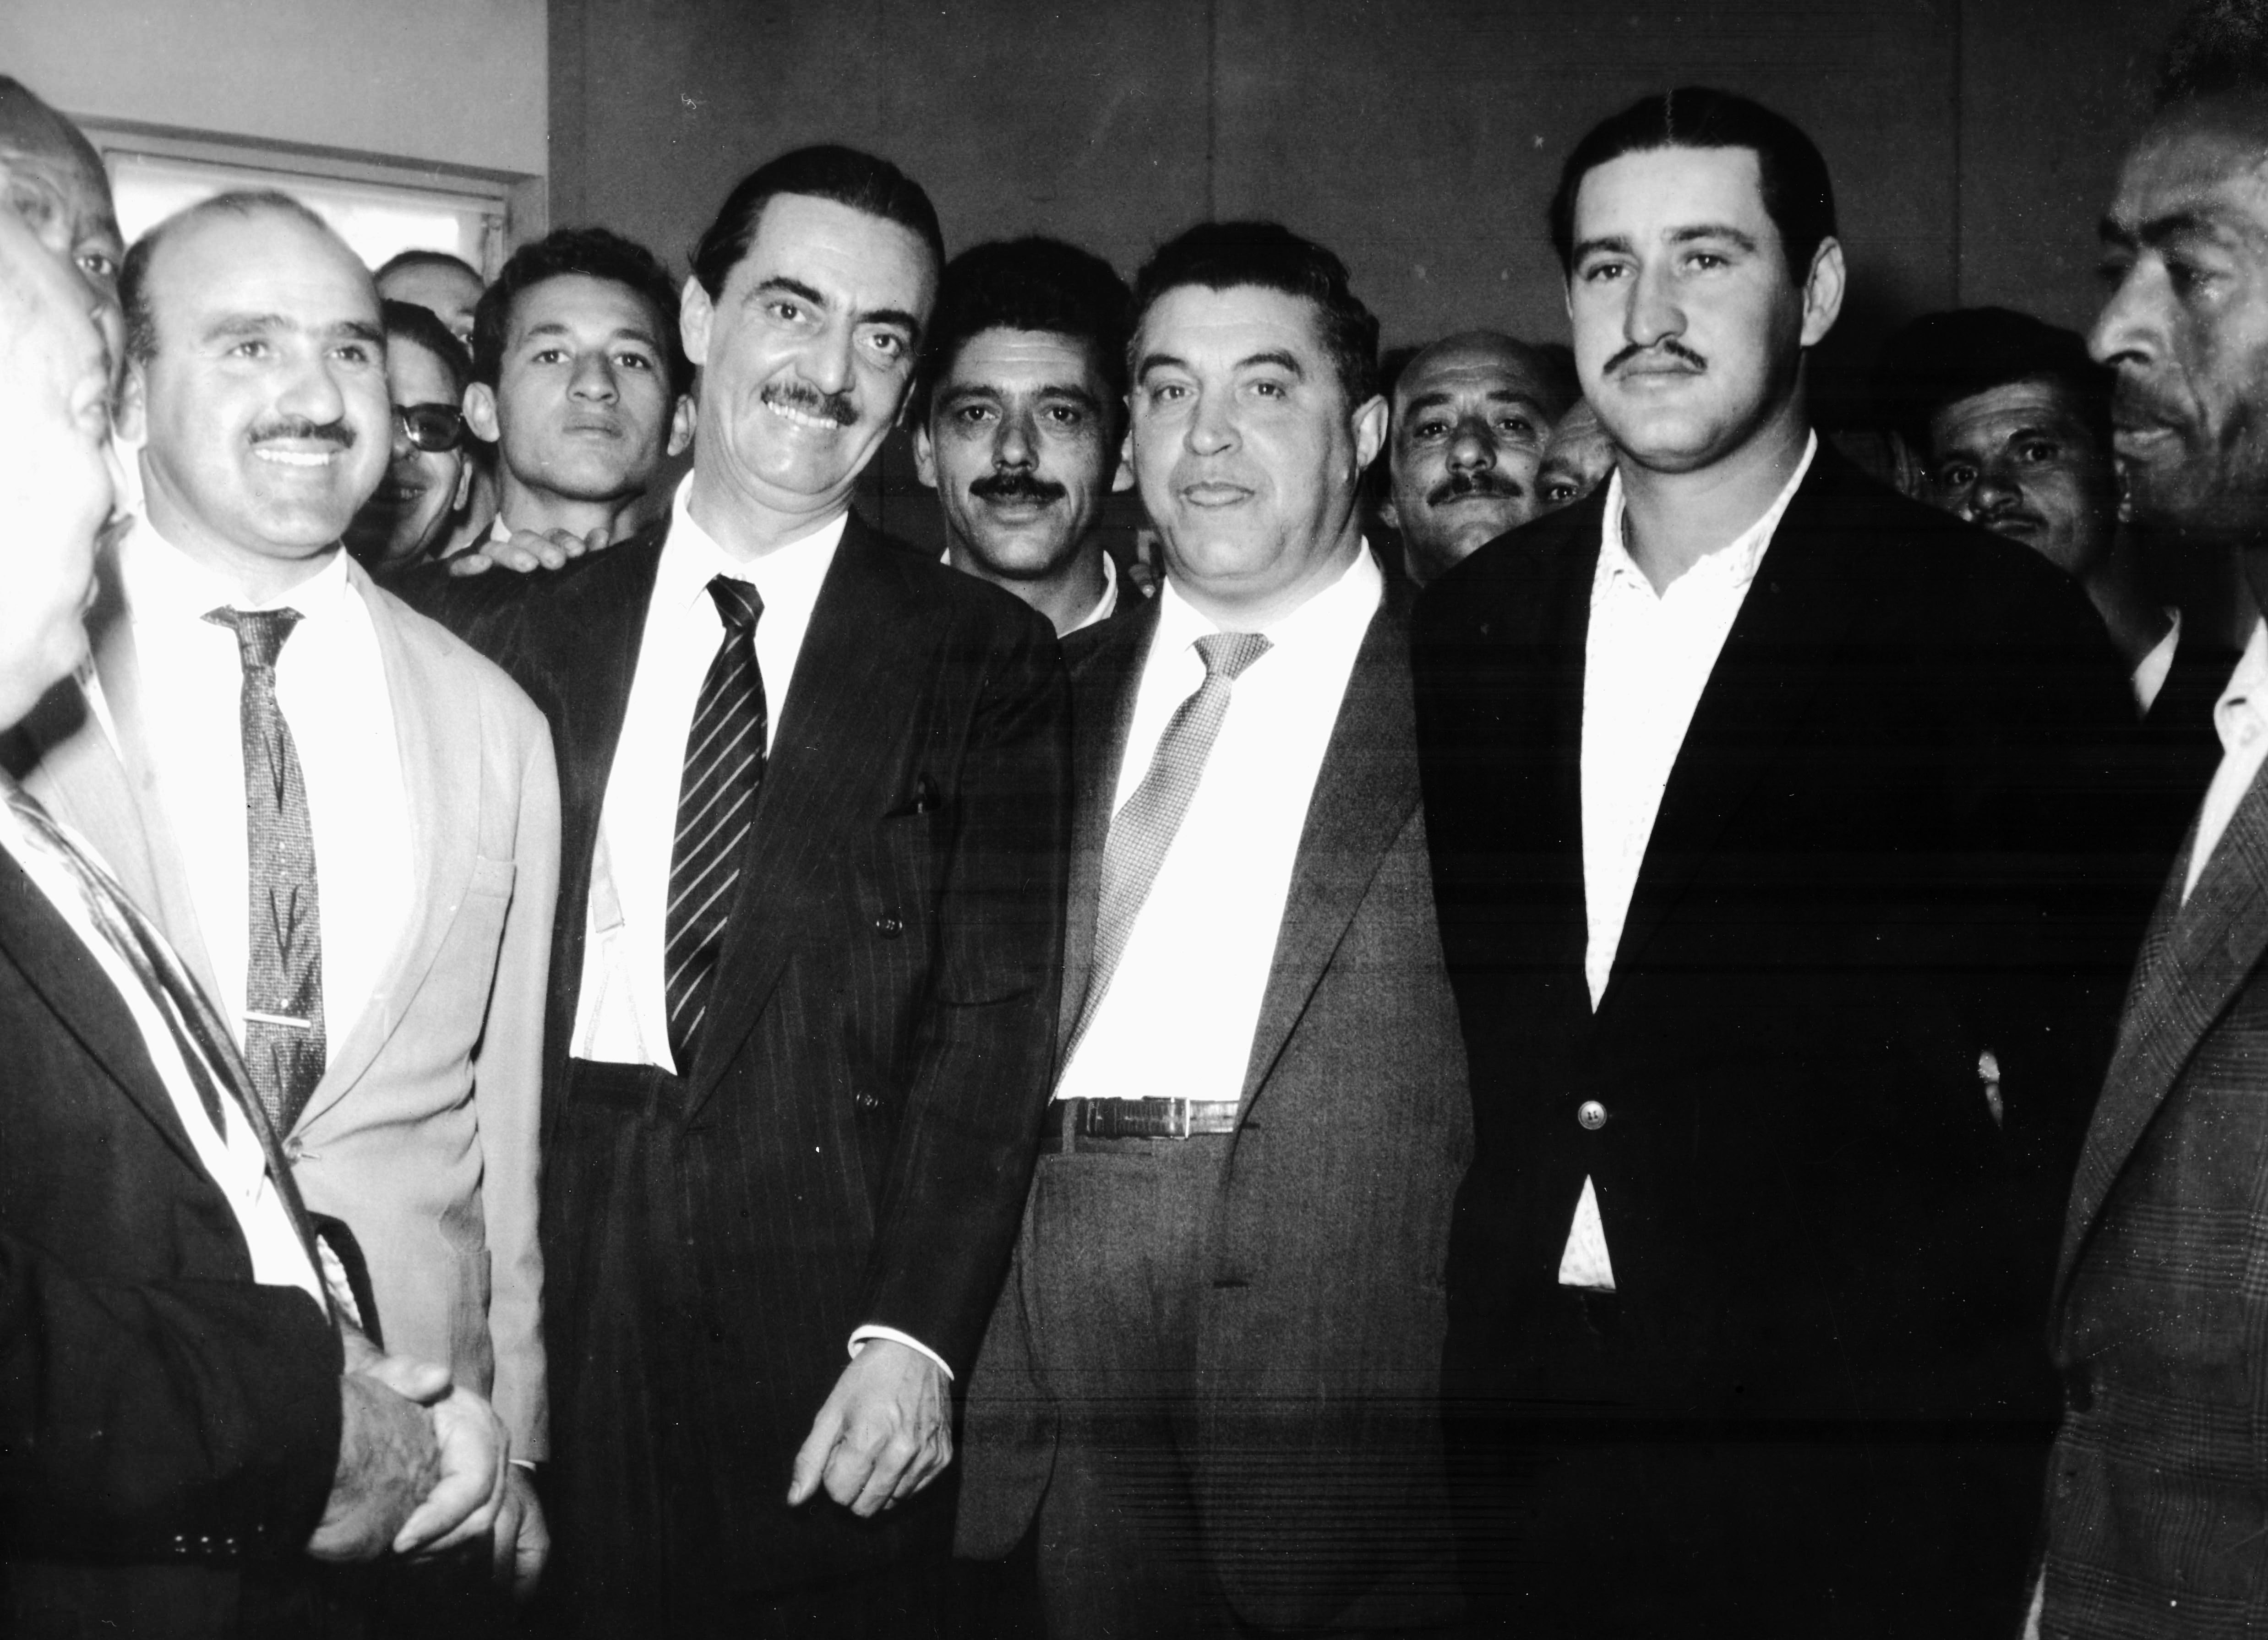 Annis ao lado do Governador Jânio Quadros, em 1959